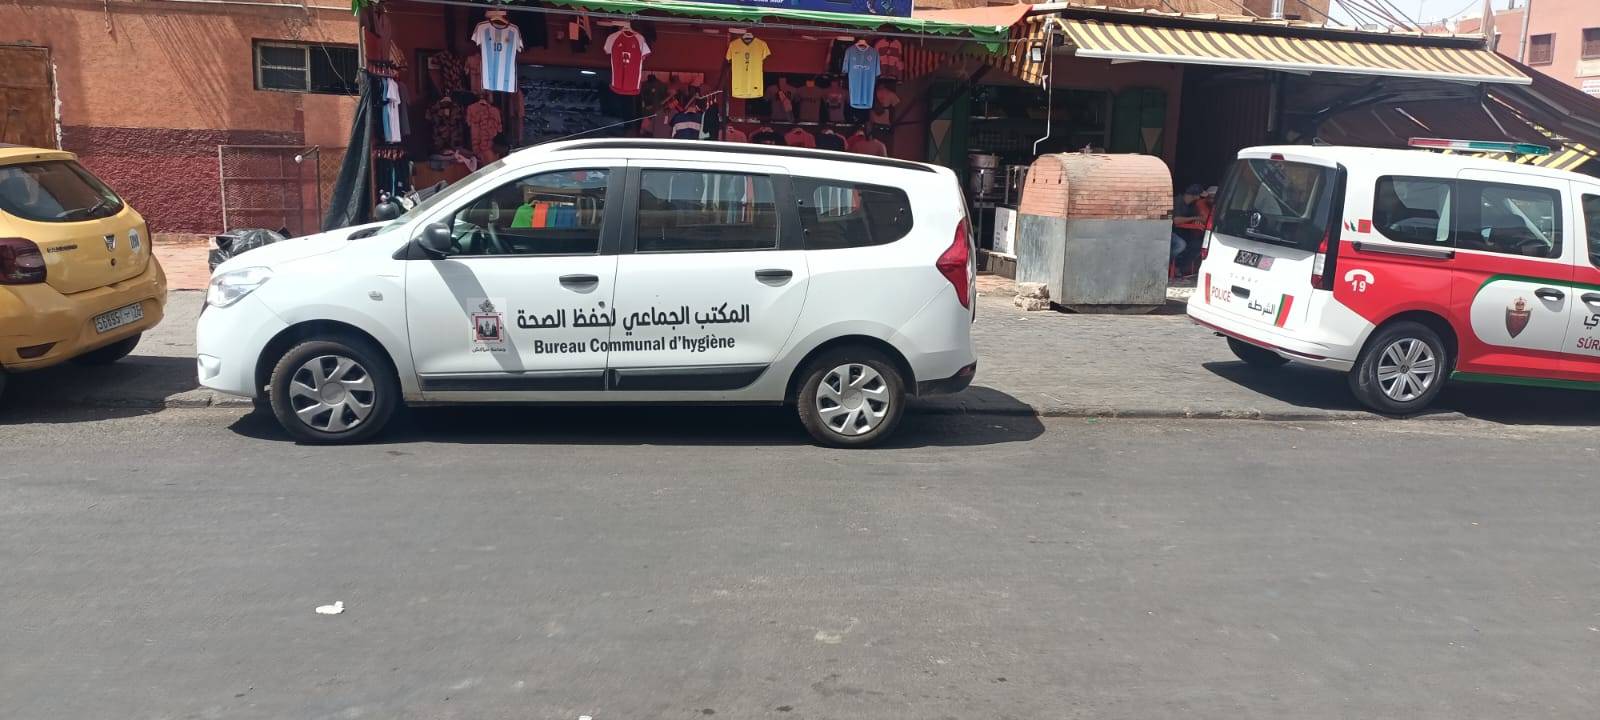 بالصور : الحملة المتأخرة تقود لاعتقال اشهر بائع « للكفتة حوت » بالداوديات